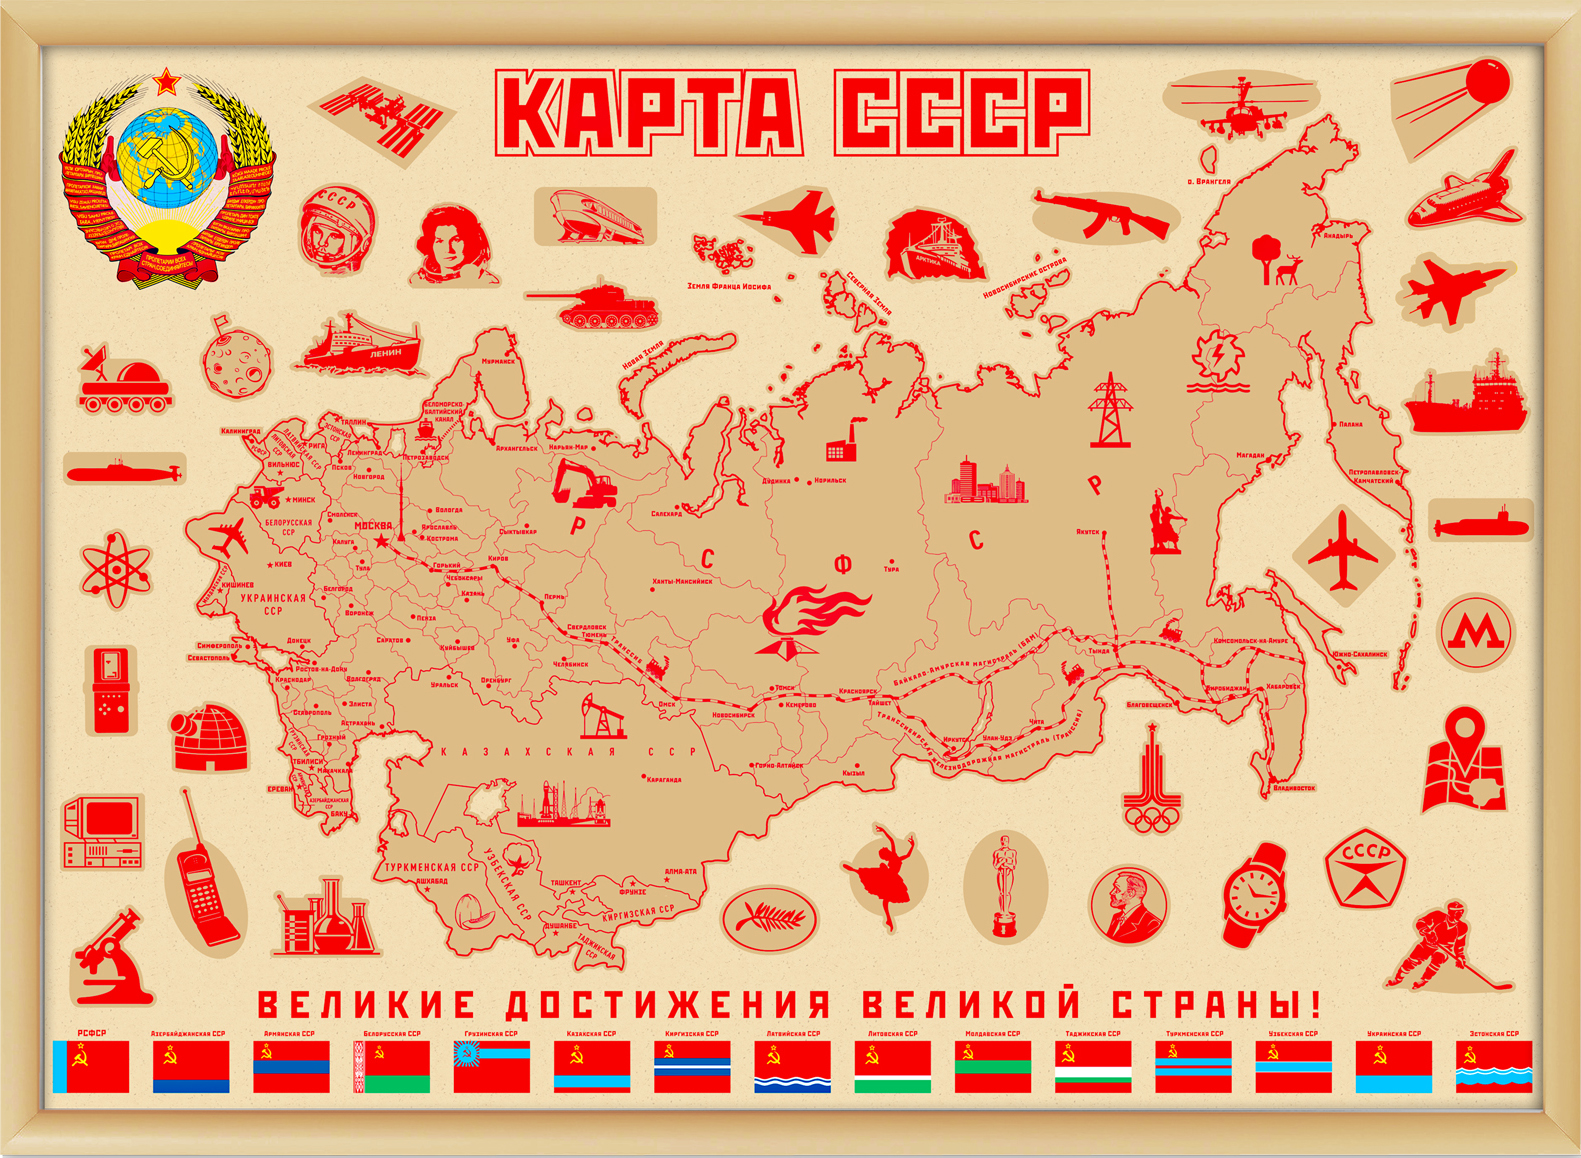 Название регионов ссср. Карта советского Союза СССР. Карта СССР С республиками для детей. Карта СССР 1989 года.